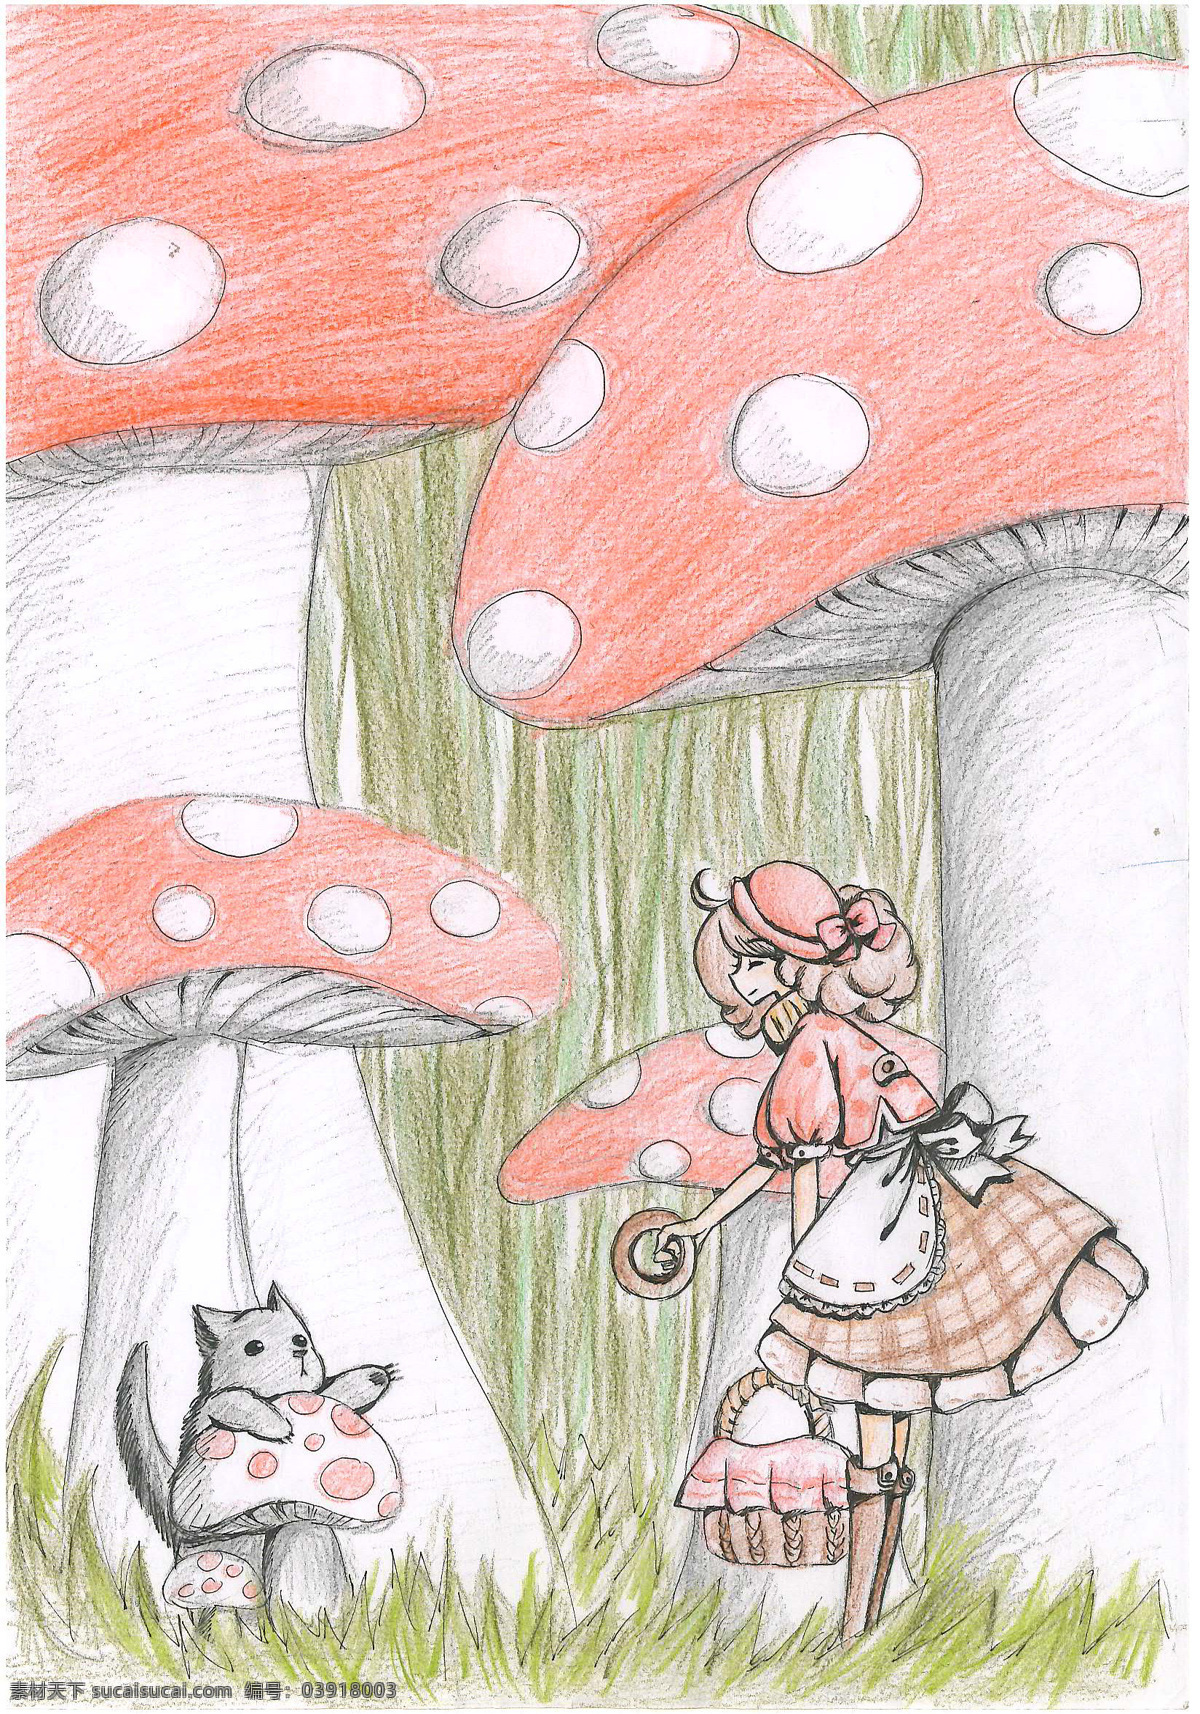 小红帽 小 灰狼 小灰狼 巨大蘑菇丛 经典 童话 篮子 巧克力 面包圈 温馨 美好 魔法森林 新版童话 动漫人物 动漫动画